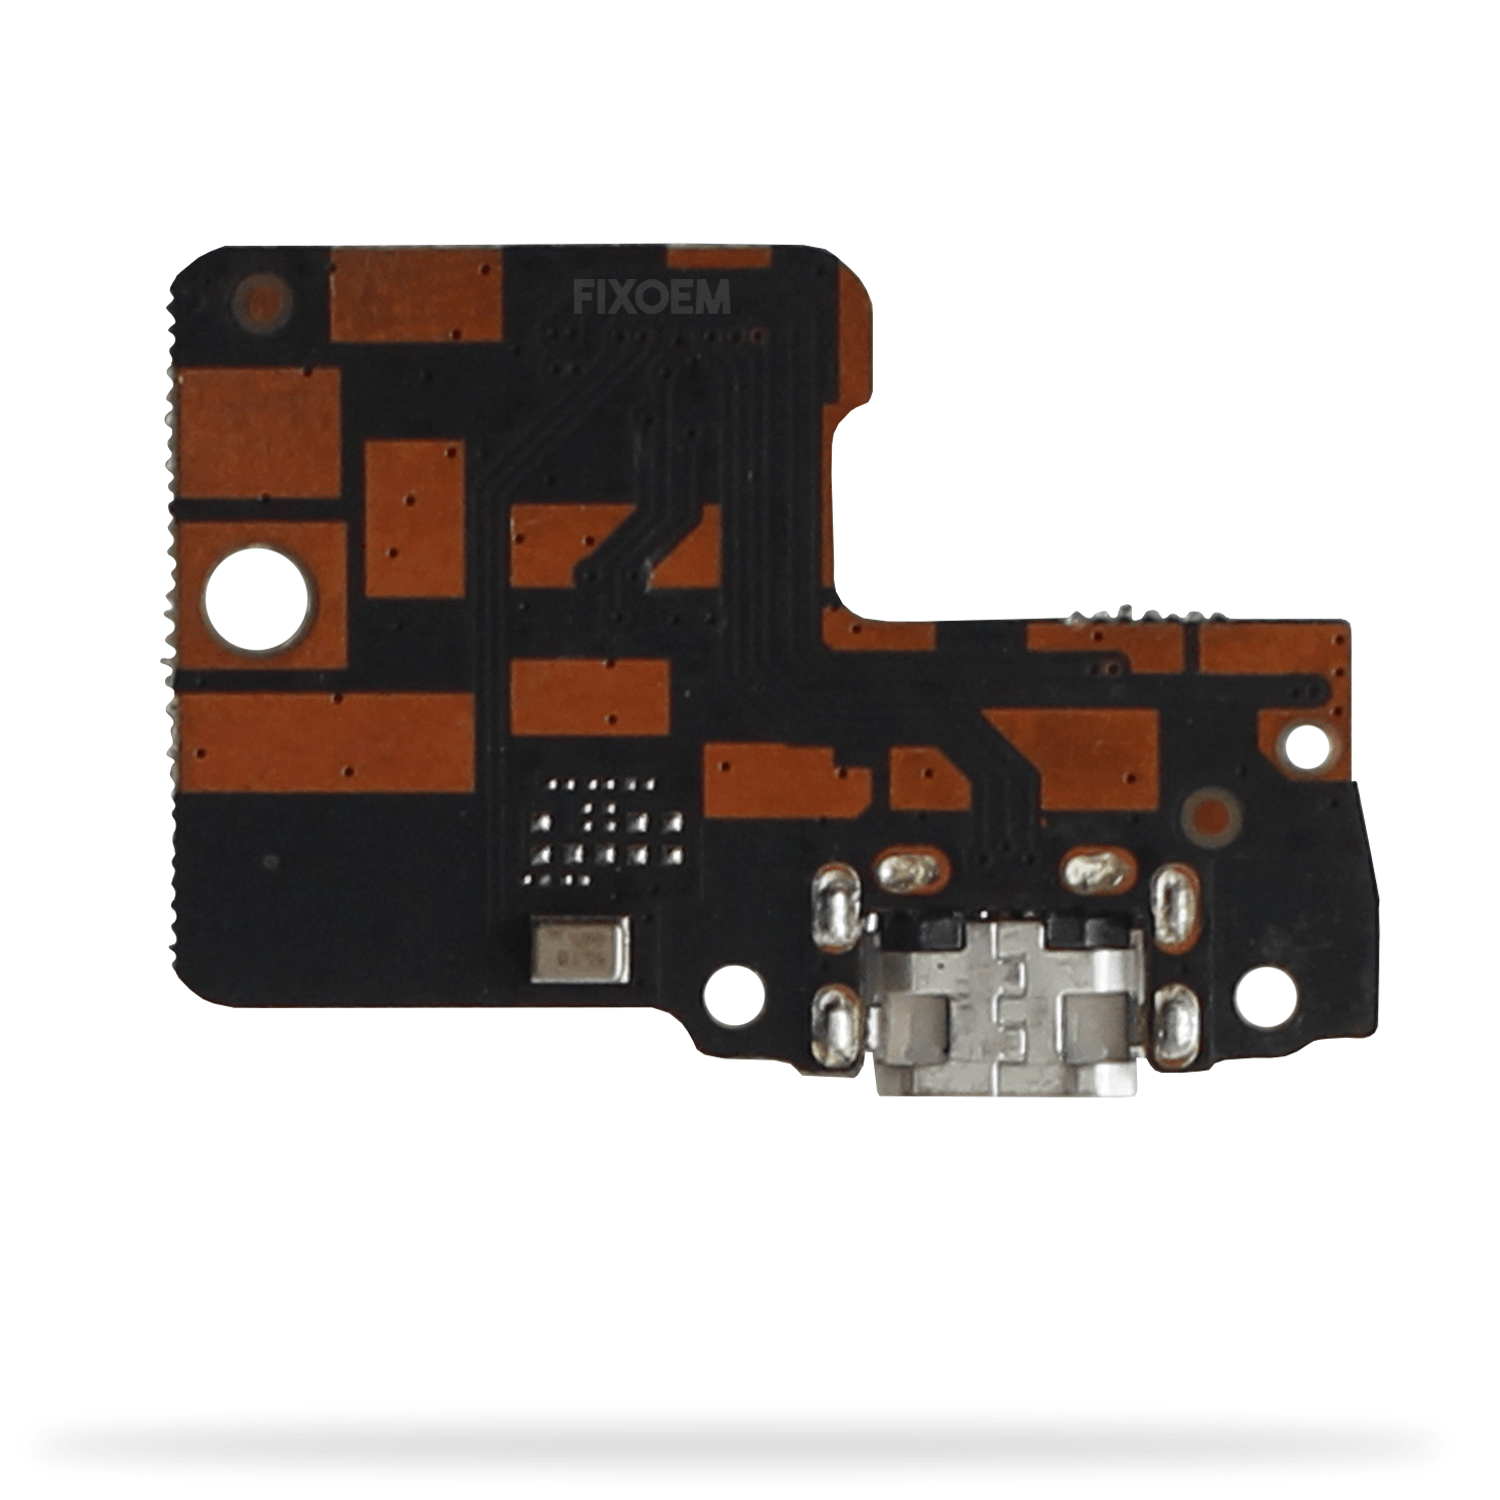 Centro Carga Xiaomi Redmi S2 a solo $ 70.00 Refaccion y puestos celulares, refurbish y microelectronica.- FixOEM